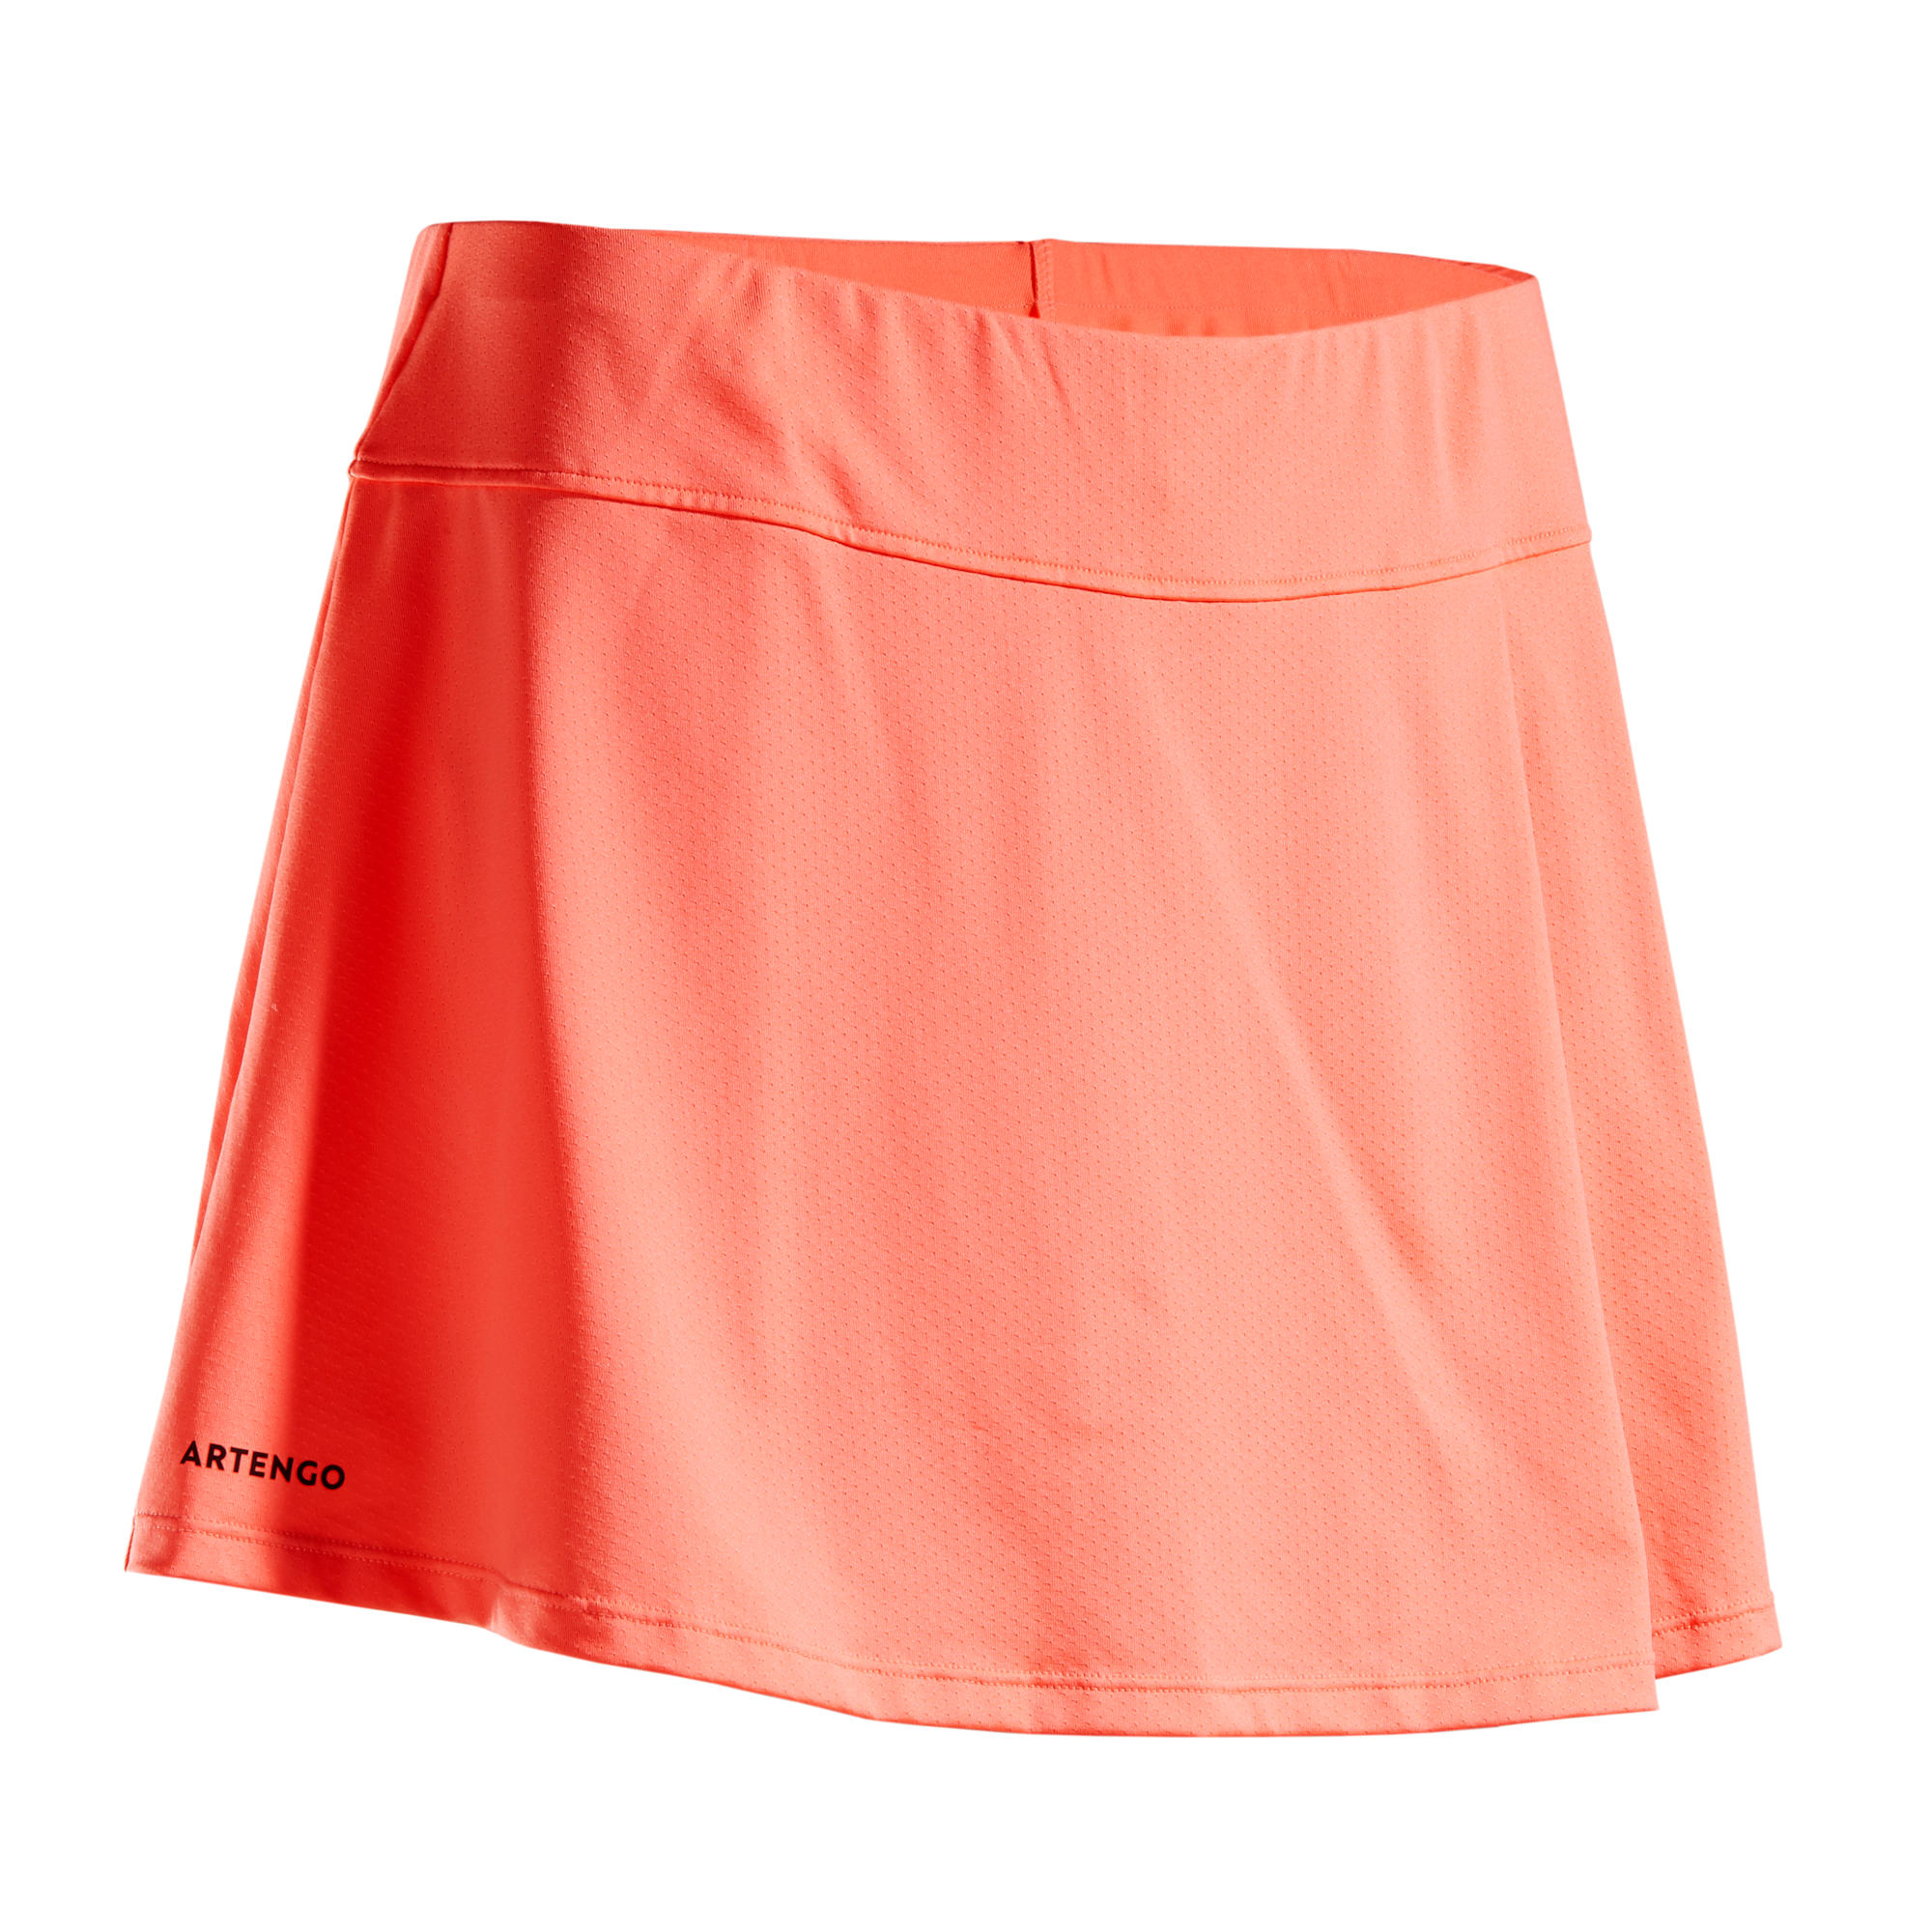 decathlon tennis skirt